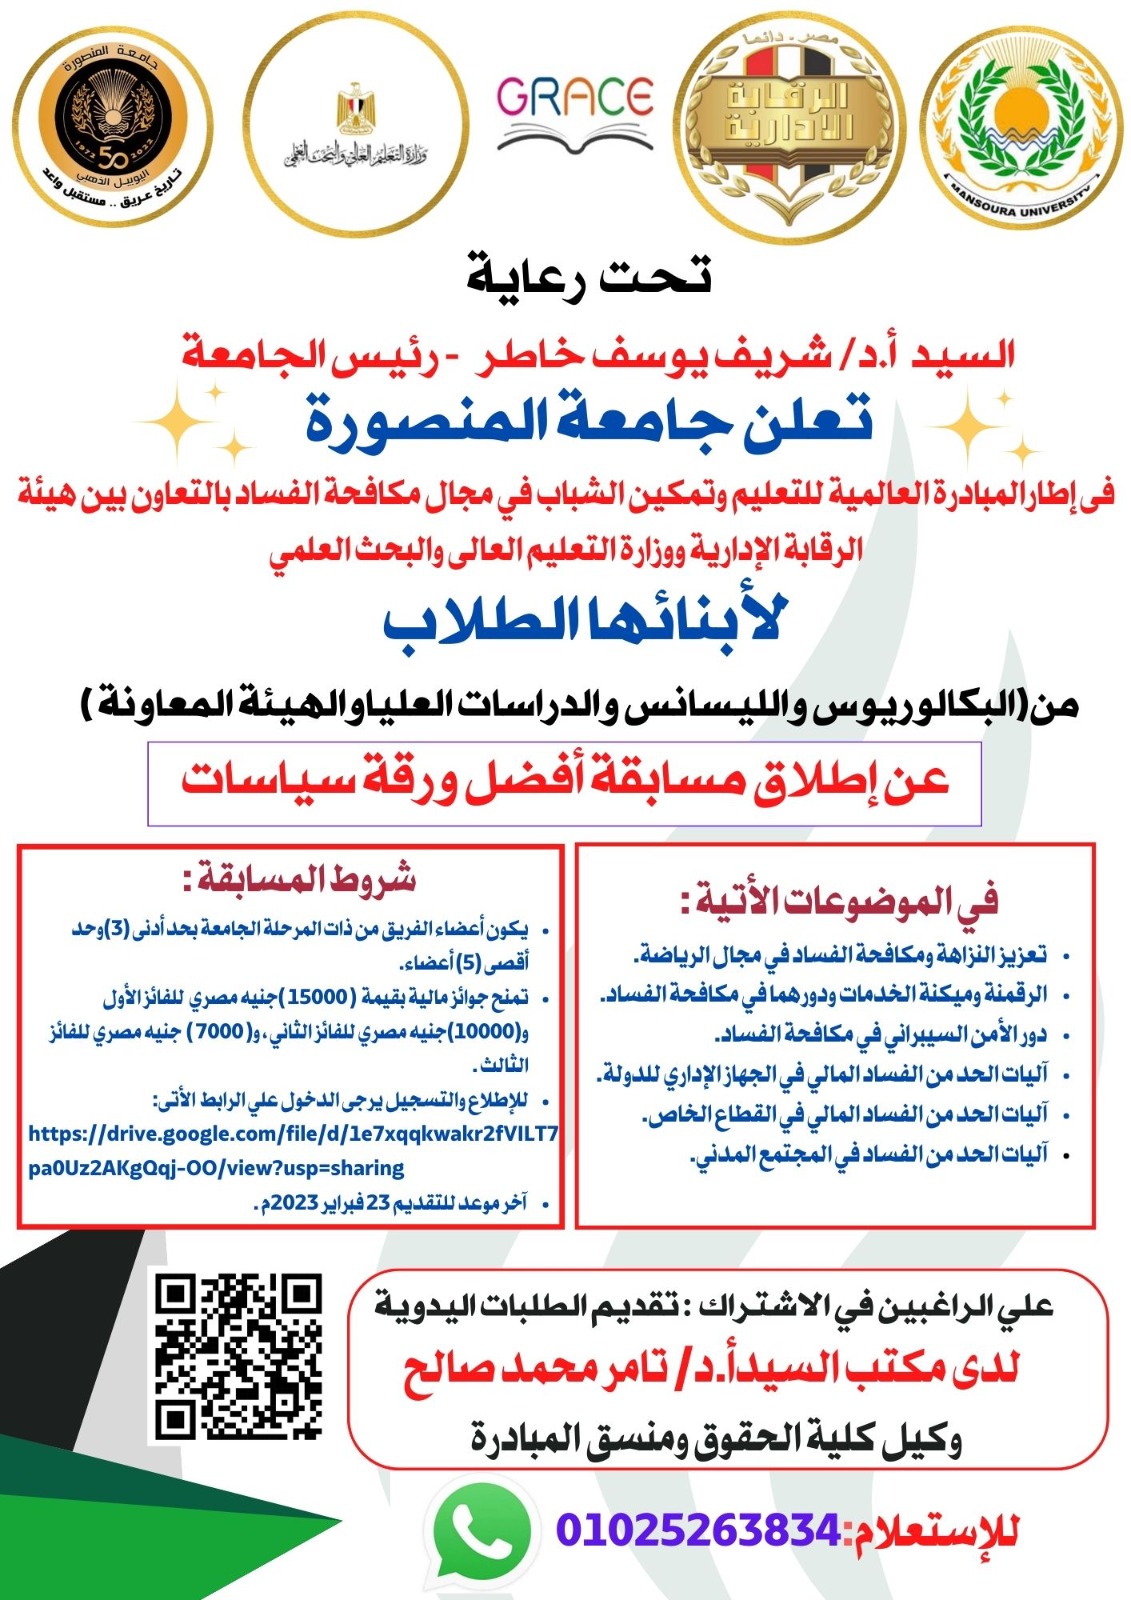  إعلان جامعة المنصورة عن إطلاق مسابقة أفضل ورقة سياسات